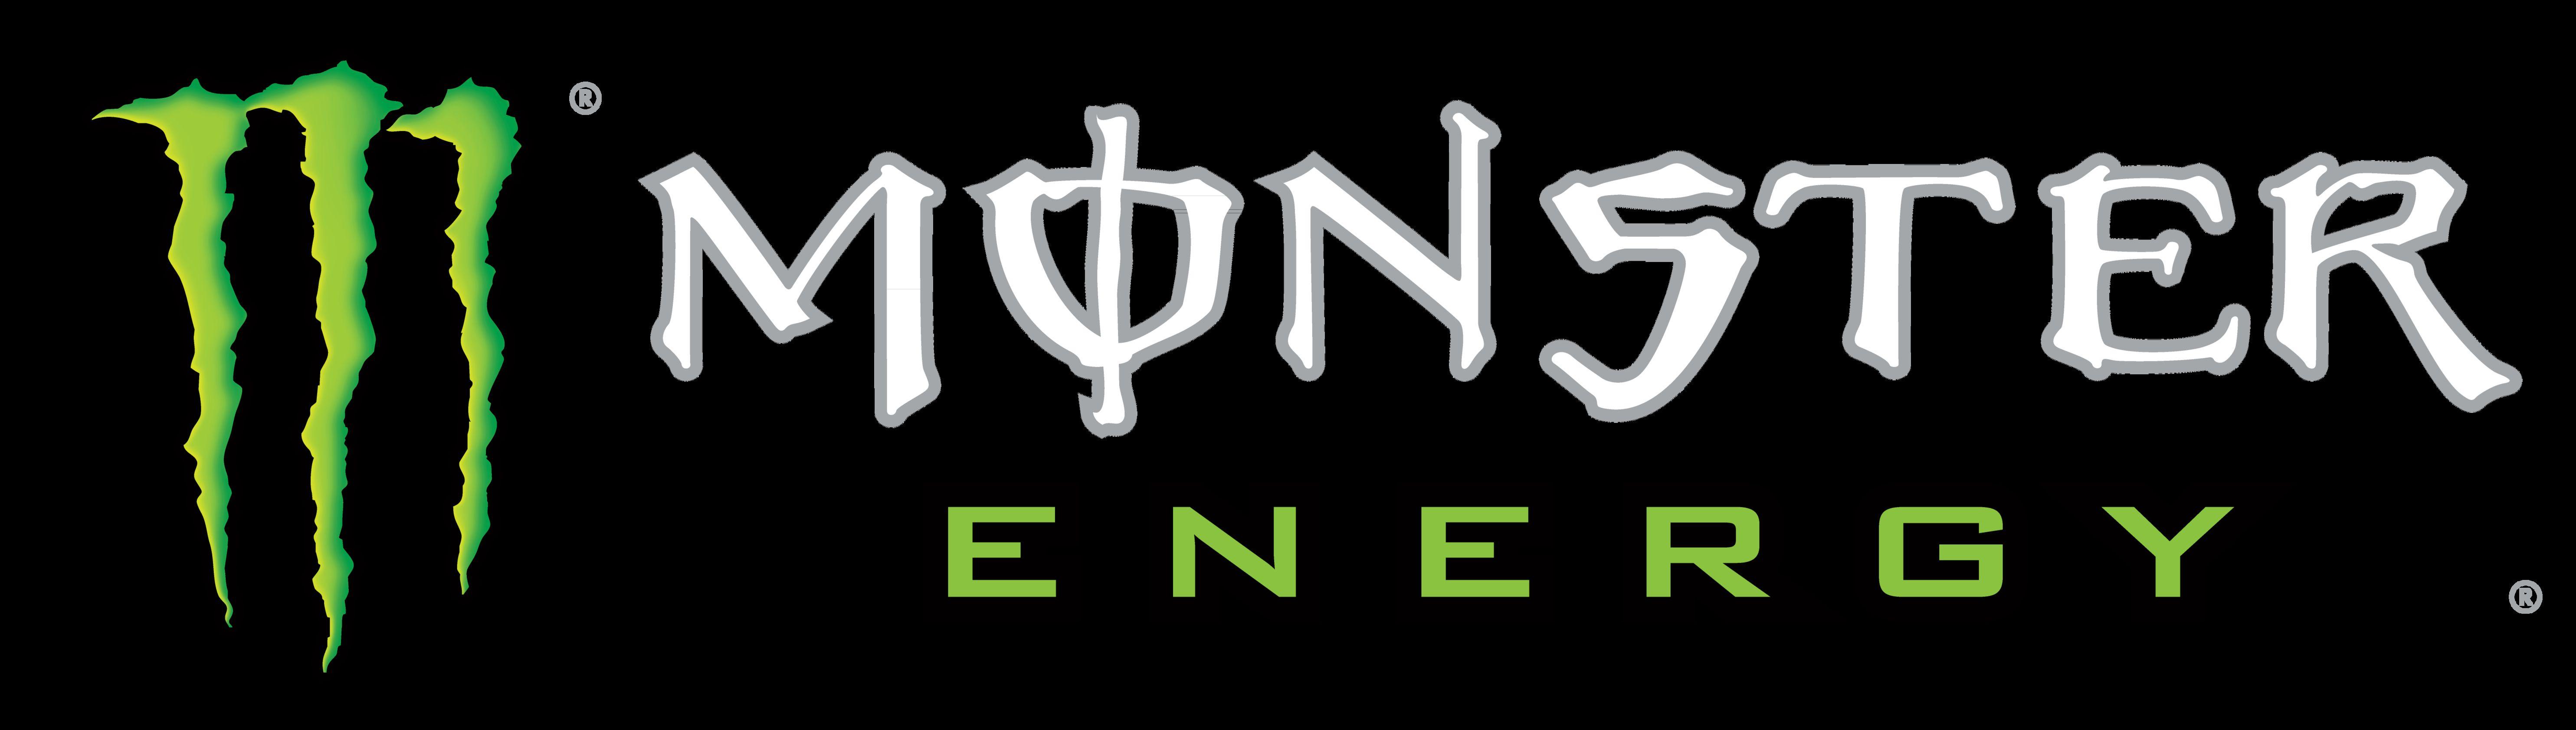 Monster Logo - Monster Energy – Logos Download